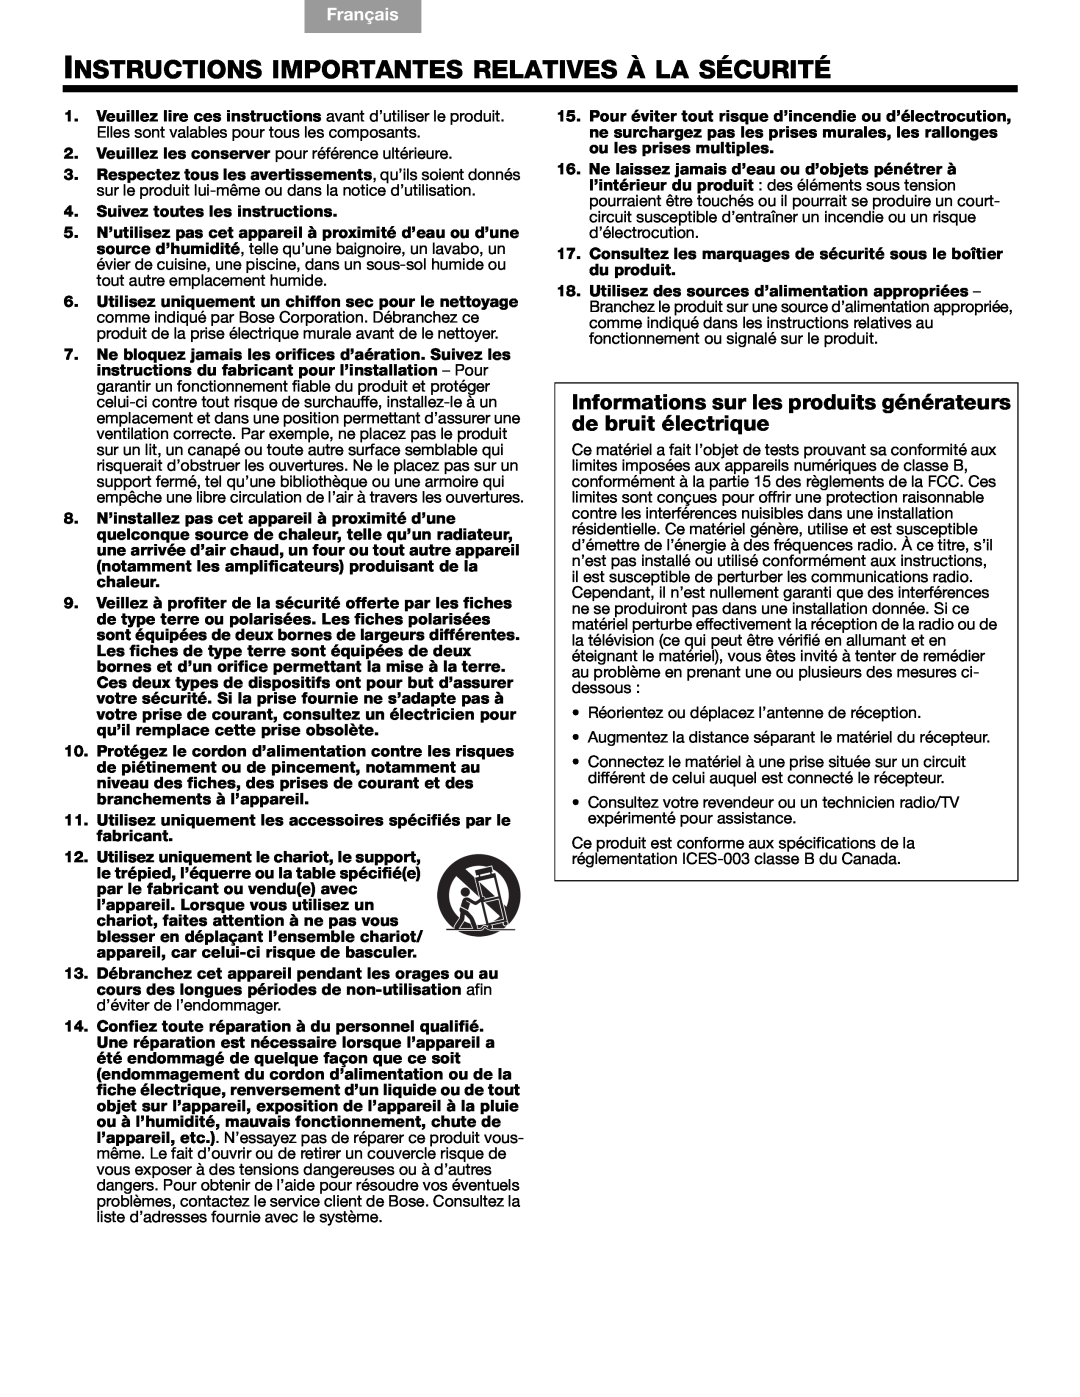 Bose Companion (R) 5, 40326 manual Instructions Importantes Relatives À La Sécurité, English Español, Français 